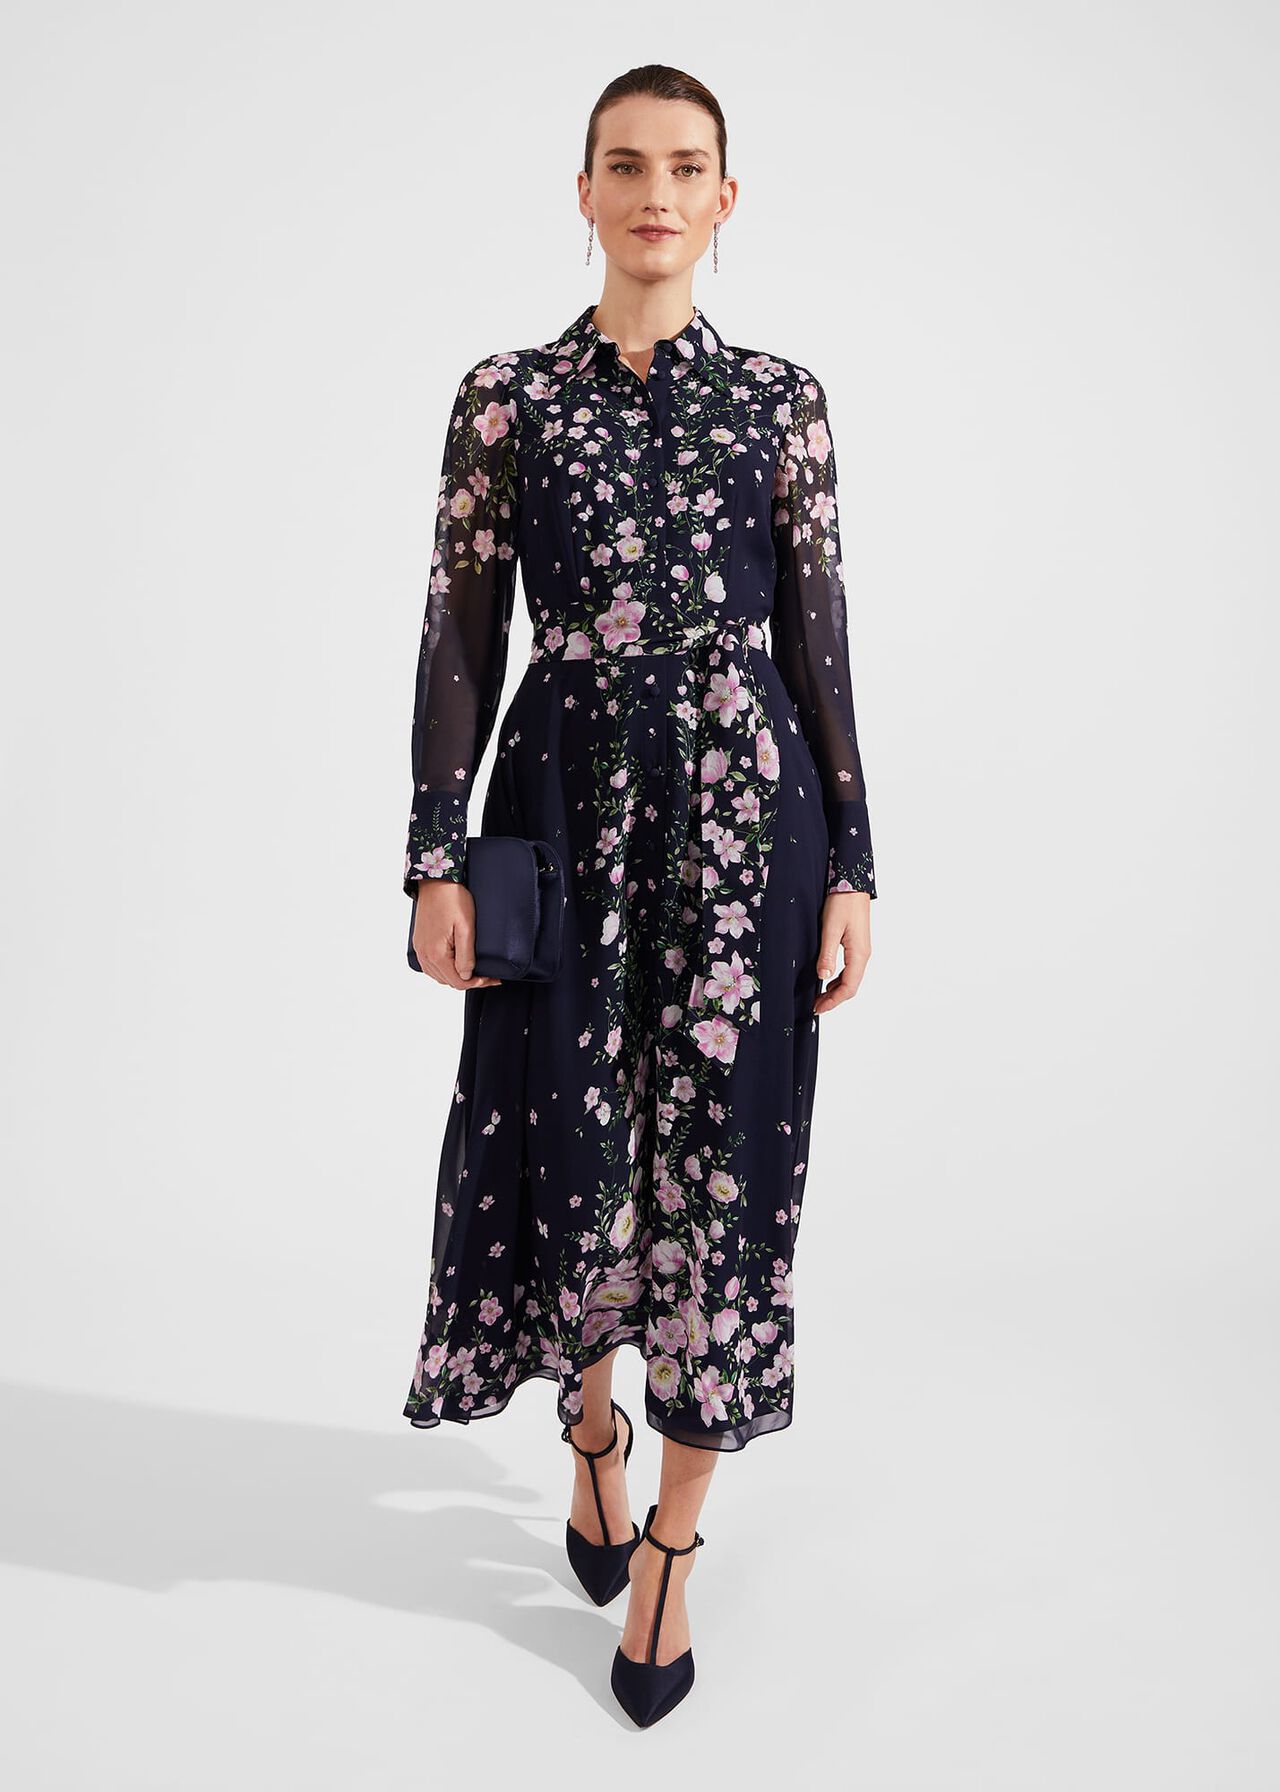 J. Jill - 2X - NEW Very Beautiful Pleated Floral Sleeveless Dress - NWT  $149 1C3